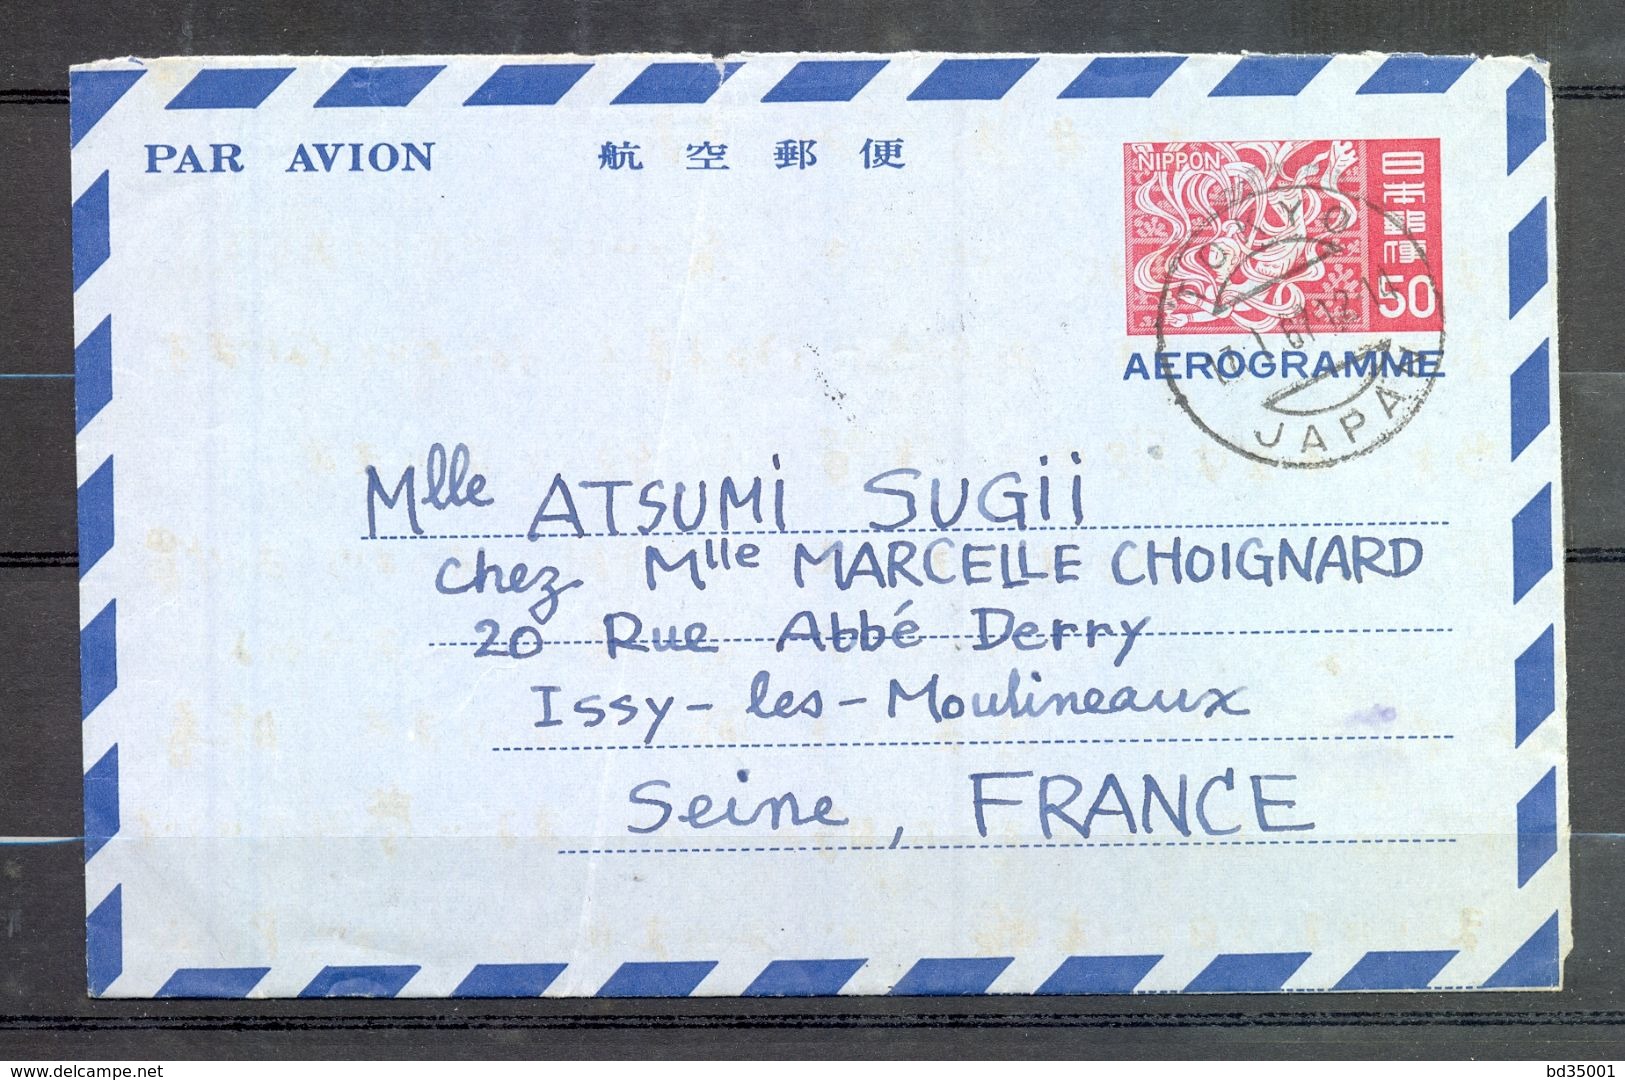 AEROGRAMME AIR LETTER PAR AVION - JAPON JAPAN - Tokyo Vers Issy Les Moulineaux - 1967 - (3) - Aérogrammes